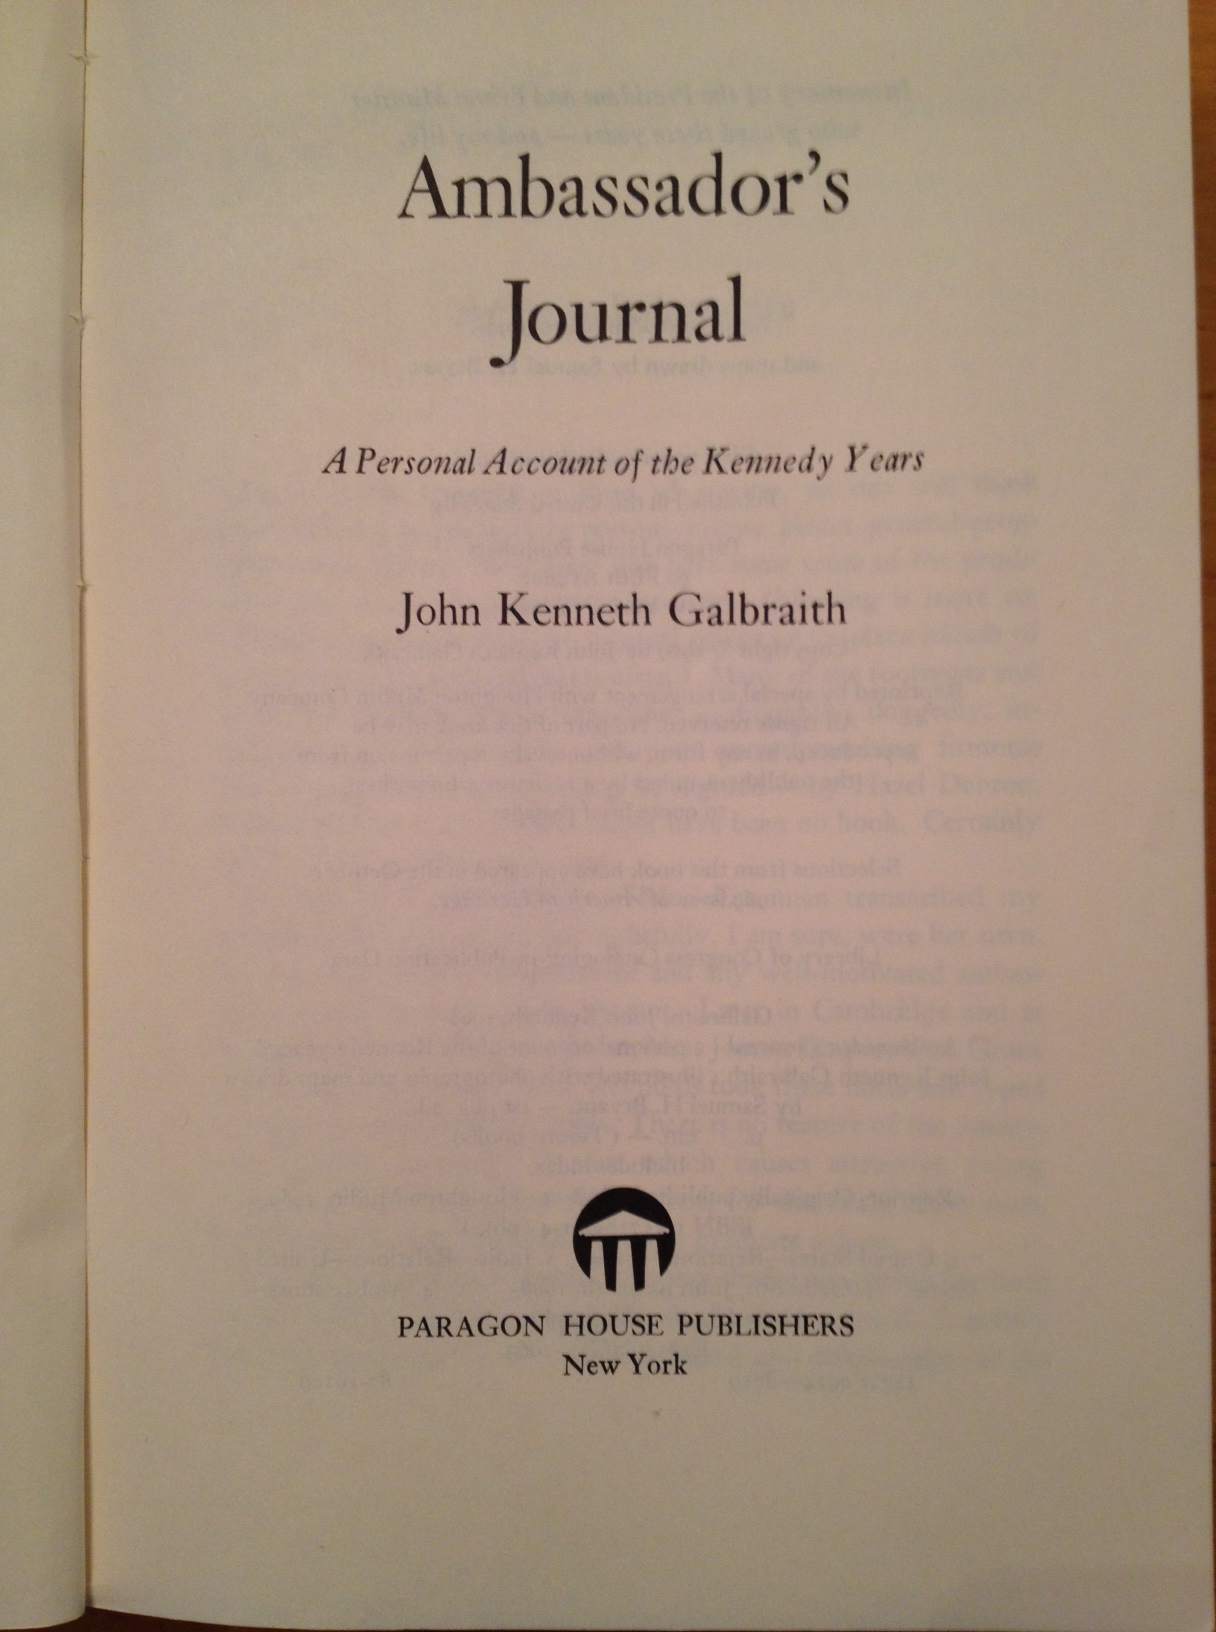 John kenneth galbraith essay material